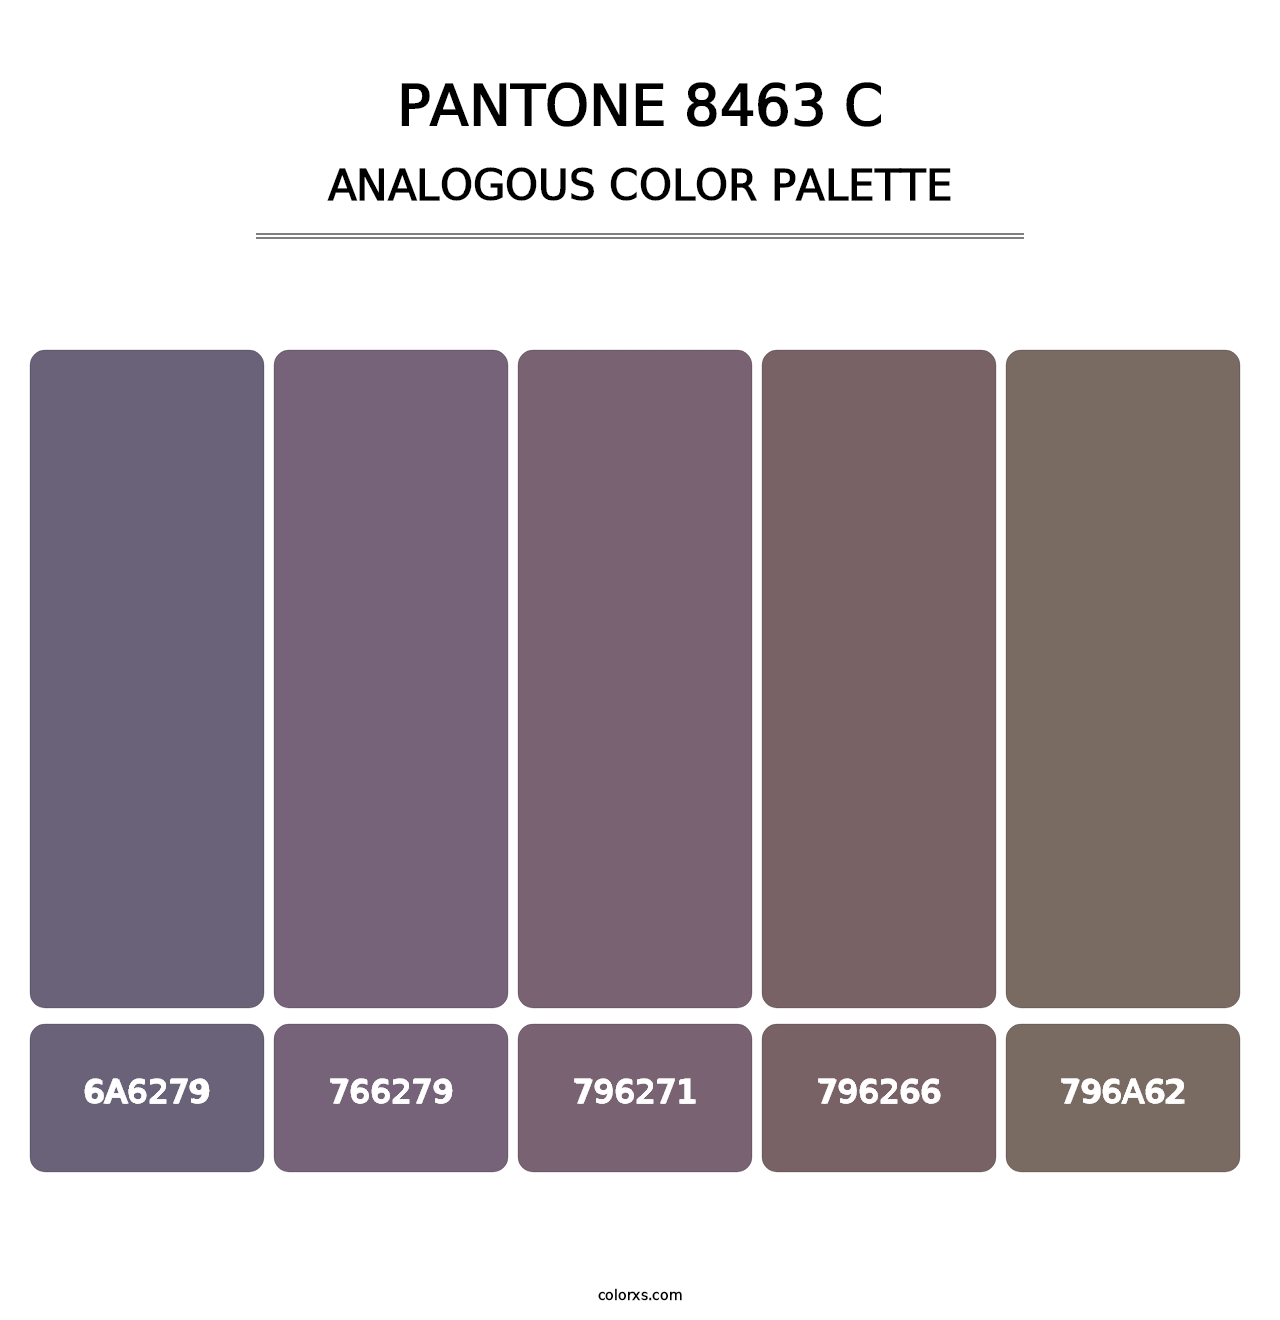 PANTONE 8463 C - Analogous Color Palette